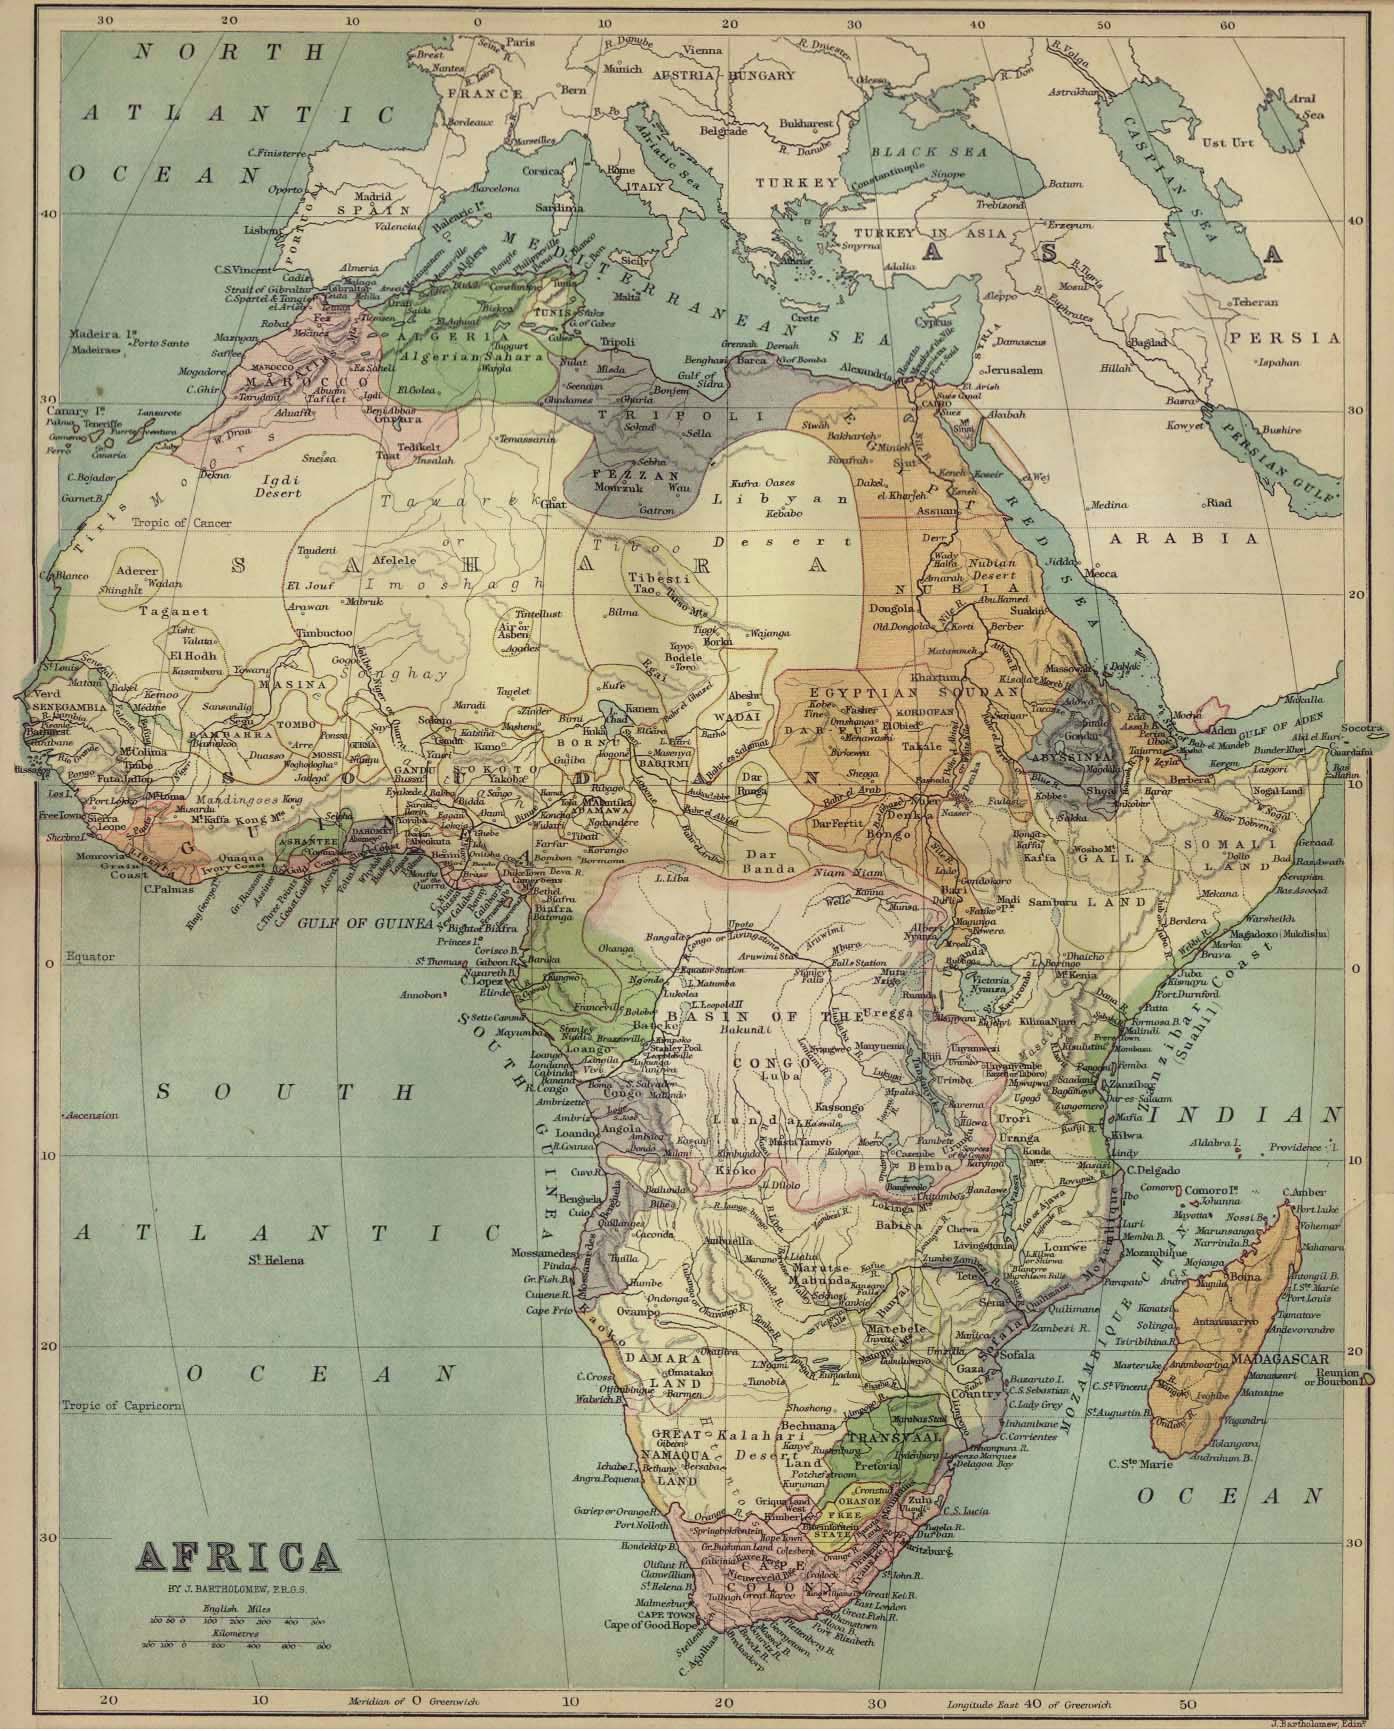 Africa, antes del reparto colonial